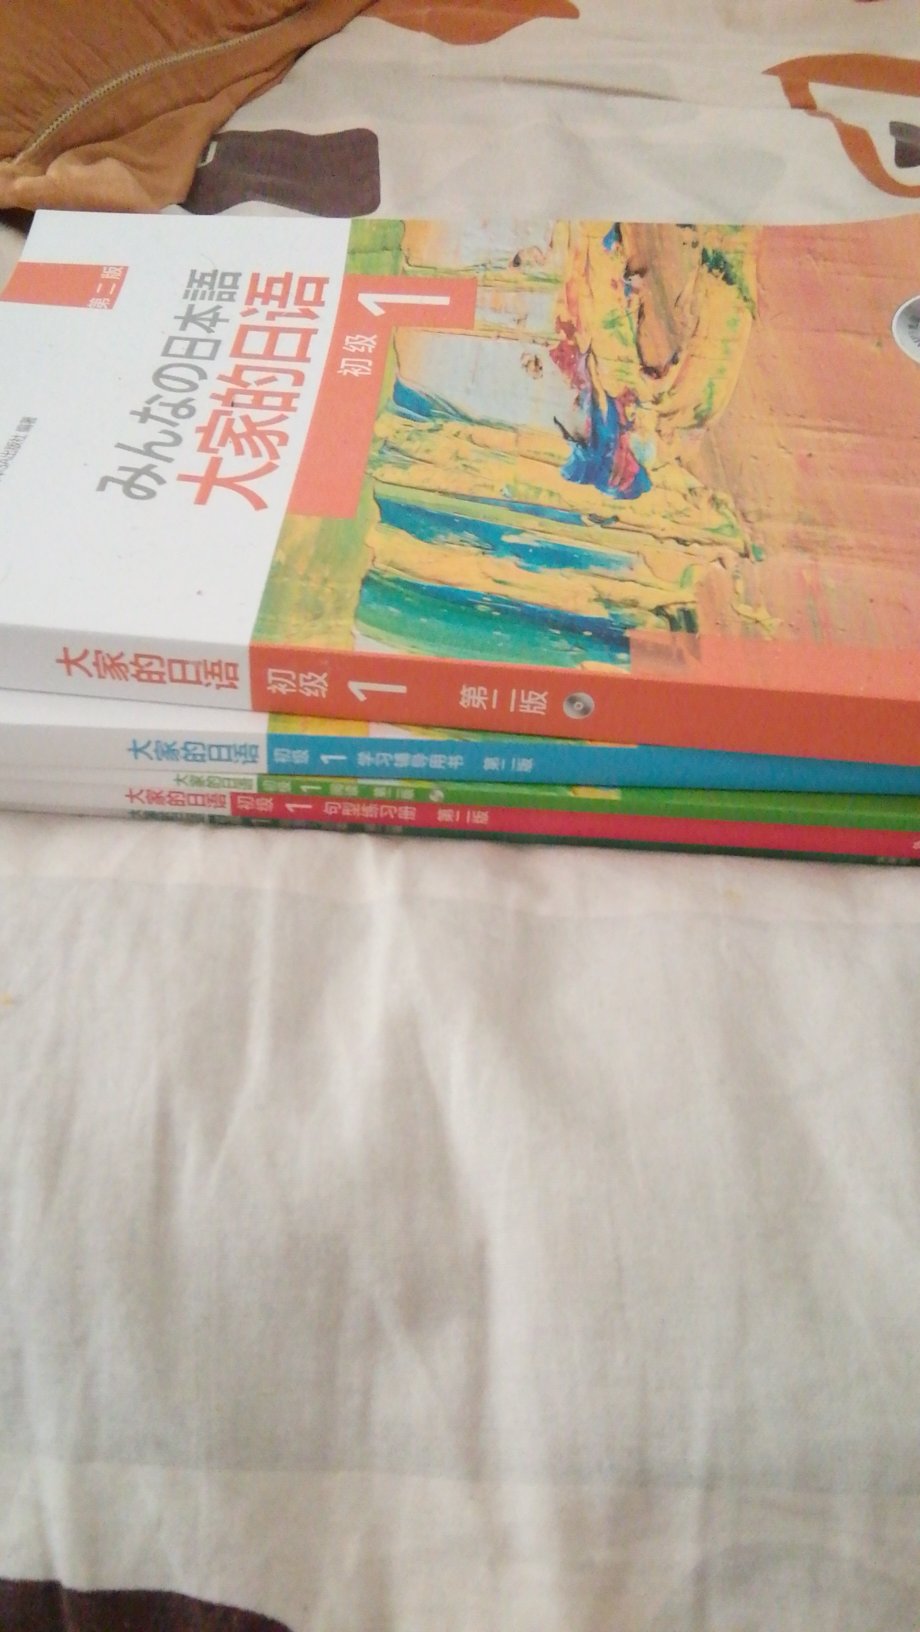 不错的，书籍，会努力学习日语的，加油